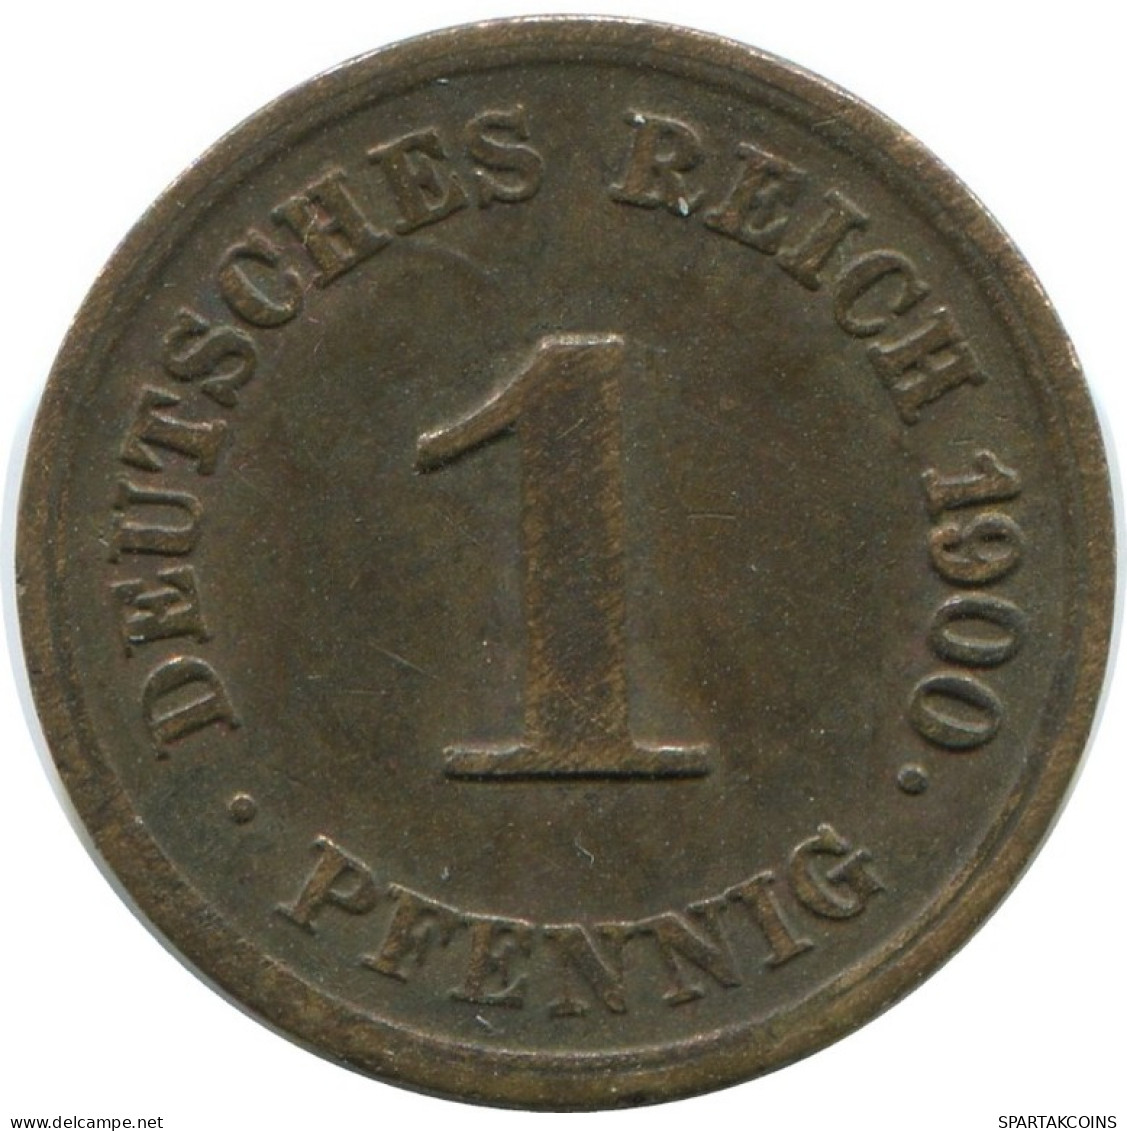 1 PFENNIG 1900 G GERMANY Coin #AD459.9.U.A - 1 Pfennig